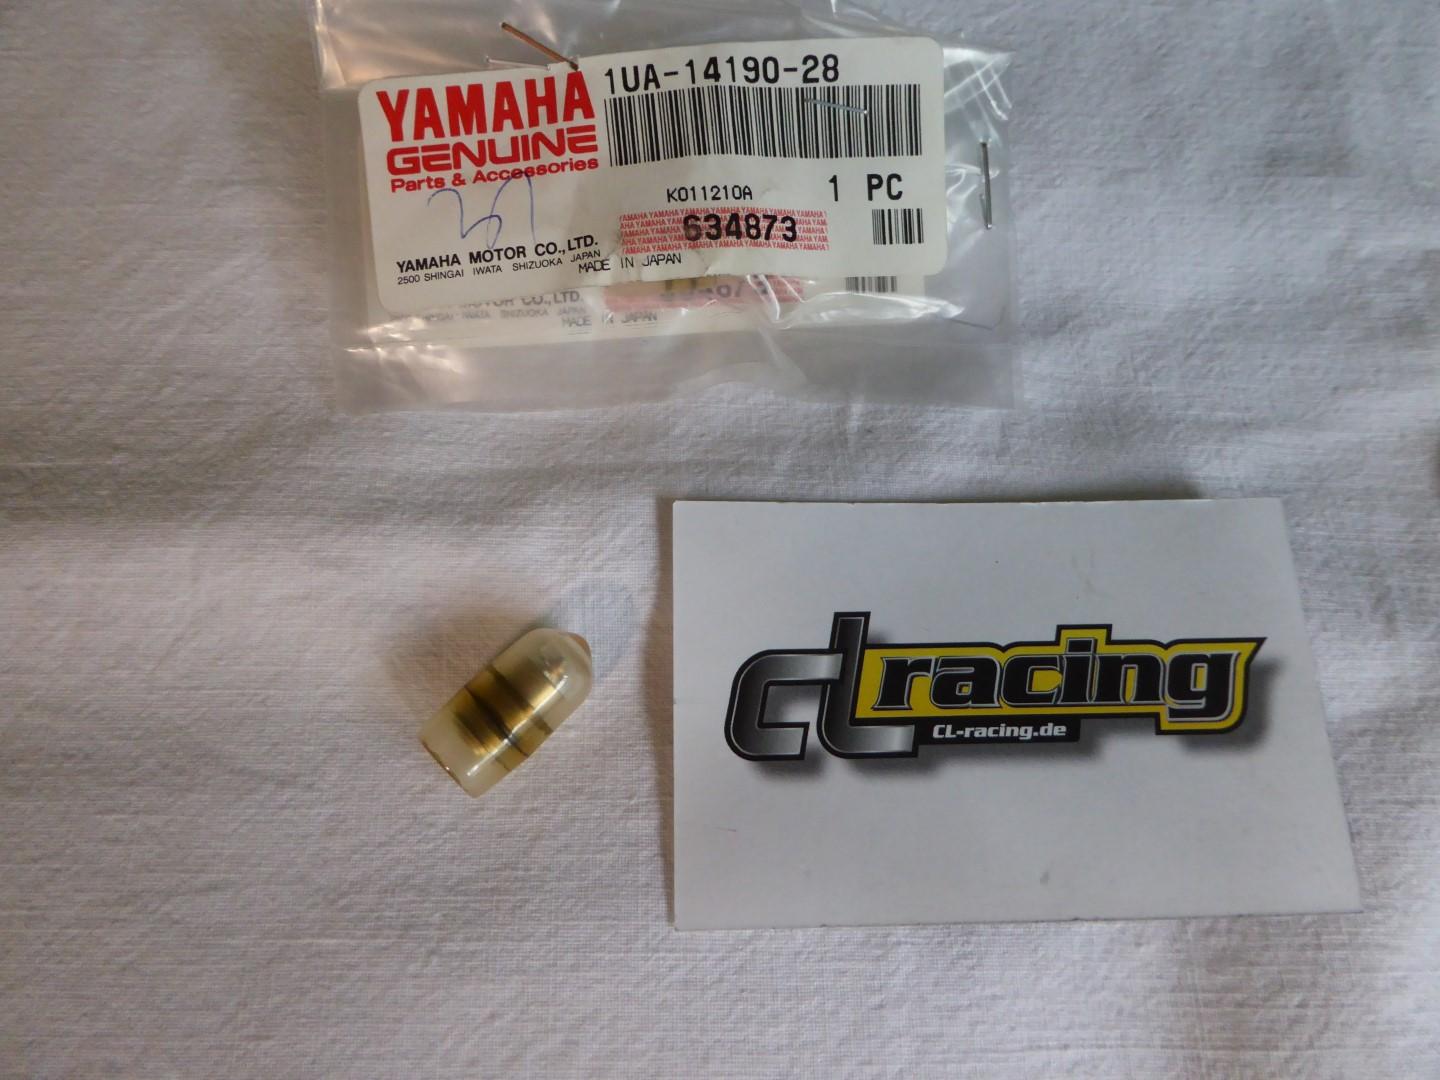 Schwimmernadel Vergaser needle valve passt an Yamaha Yfz Rd 350 1UA-14190-28